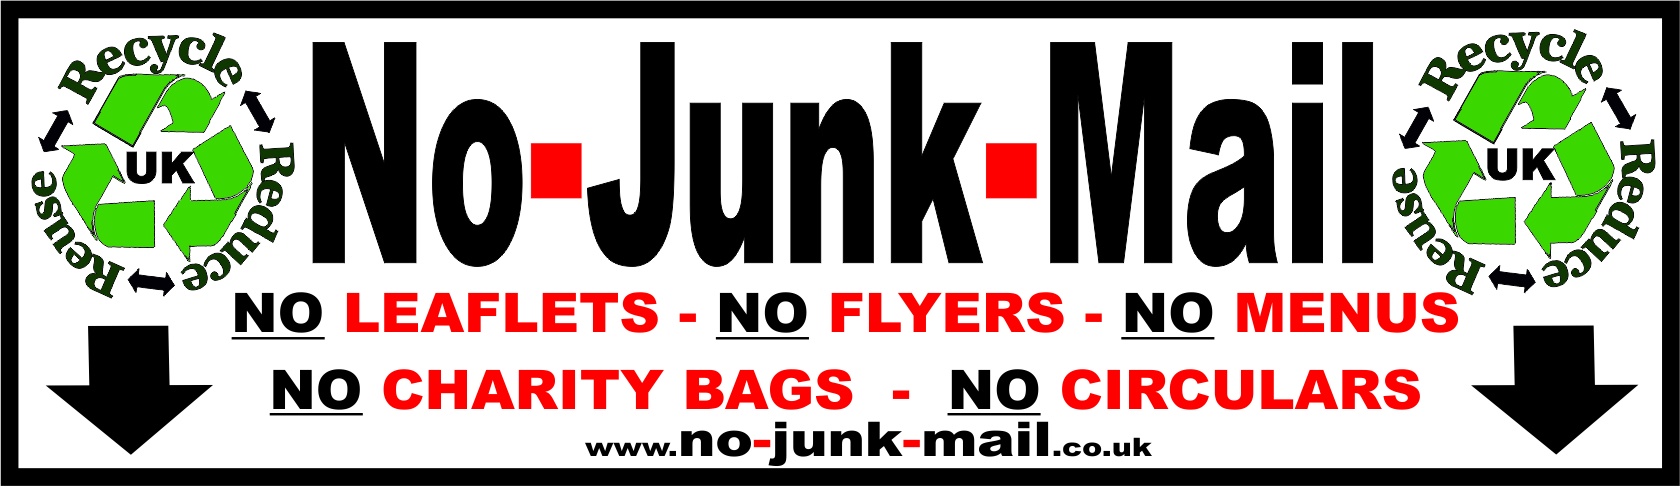 4a No Junk Mail Sign, No Junk Mail Sticker, Junk Mail Sign, Junk Mail Sticker, Stops Junk Mail, No Junk Mail Letterbox Sticker by www.no-junk-mail.co.uk